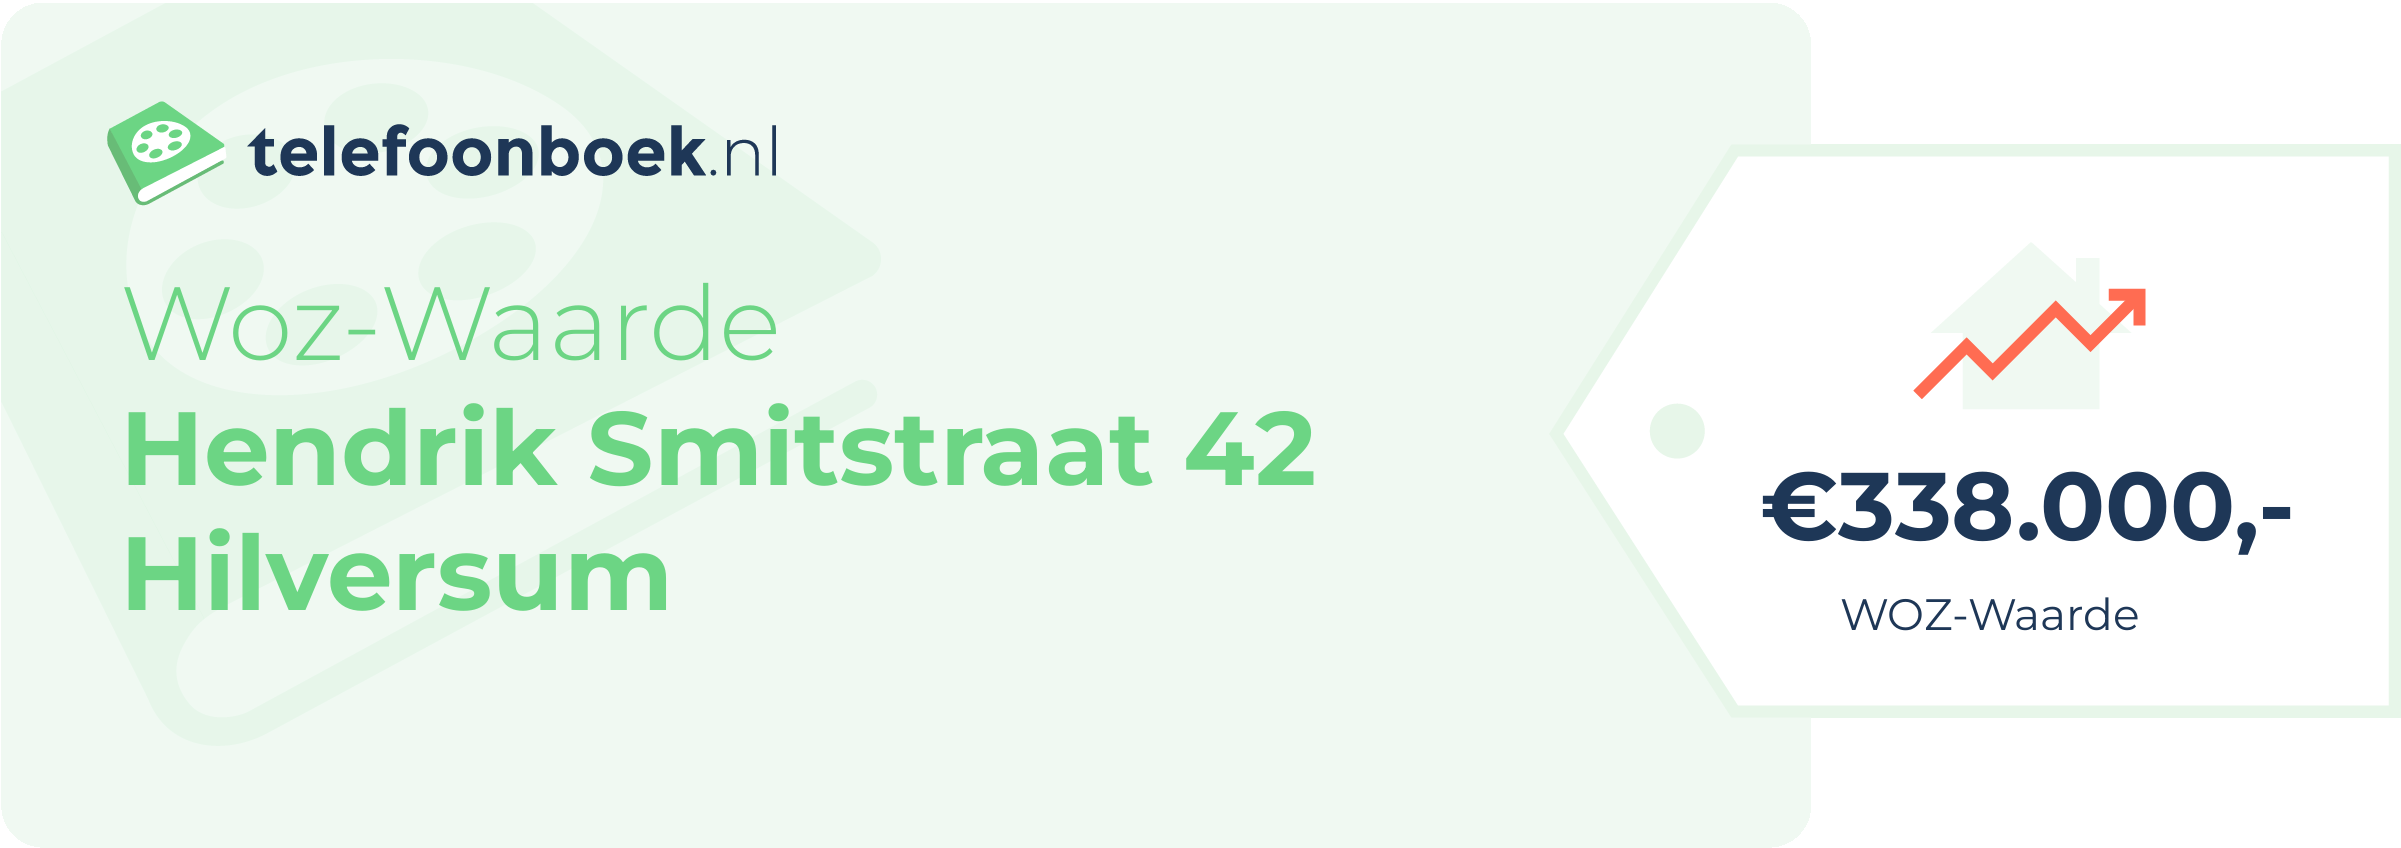 WOZ-waarde Hendrik Smitstraat 42 Hilversum